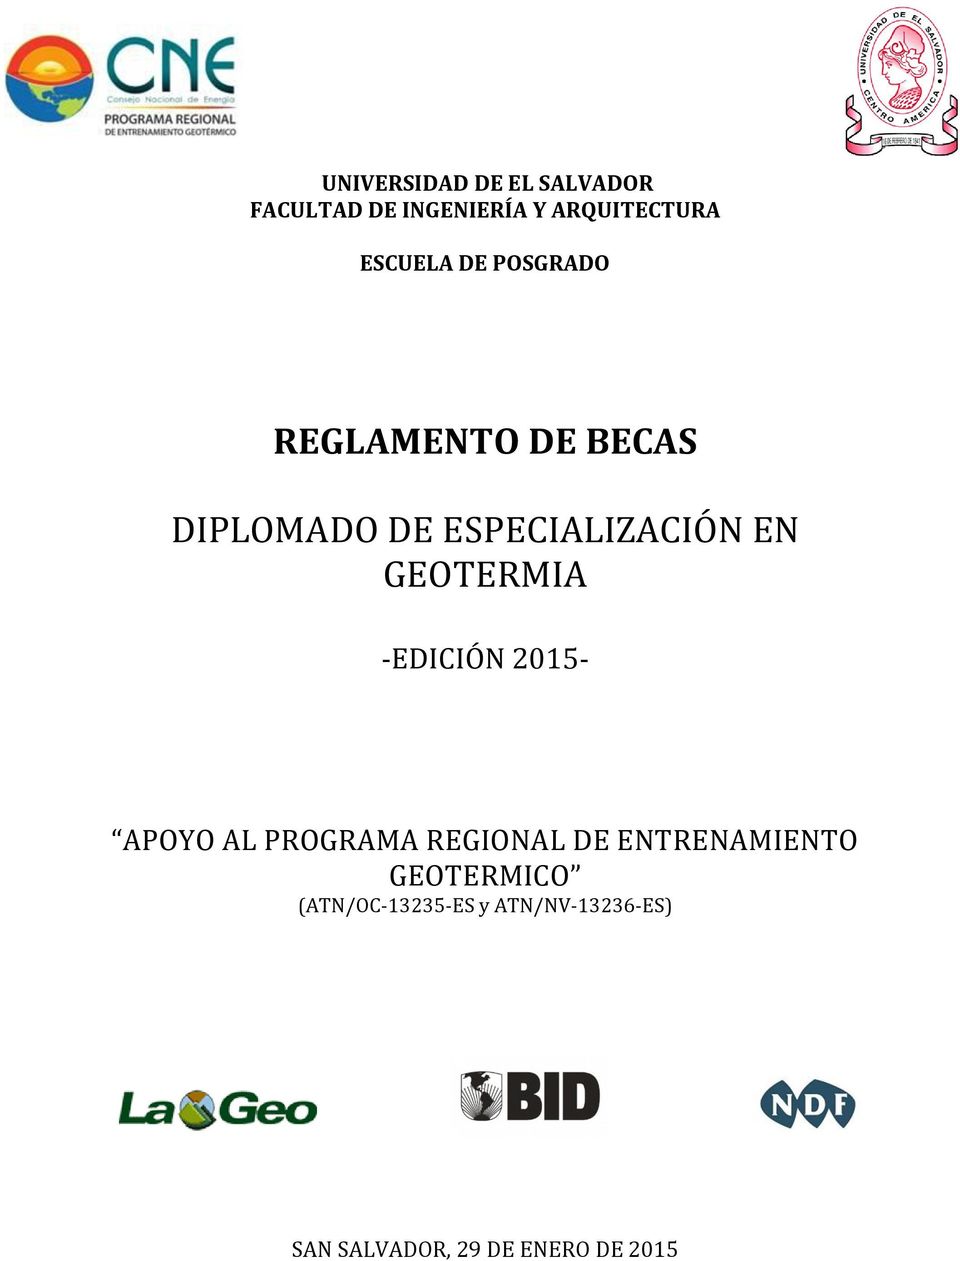 GEOTERMIA -EDICIÓN 2015- APOYO AL PROGRAMA REGIONAL DE ENTRENAMIENTO